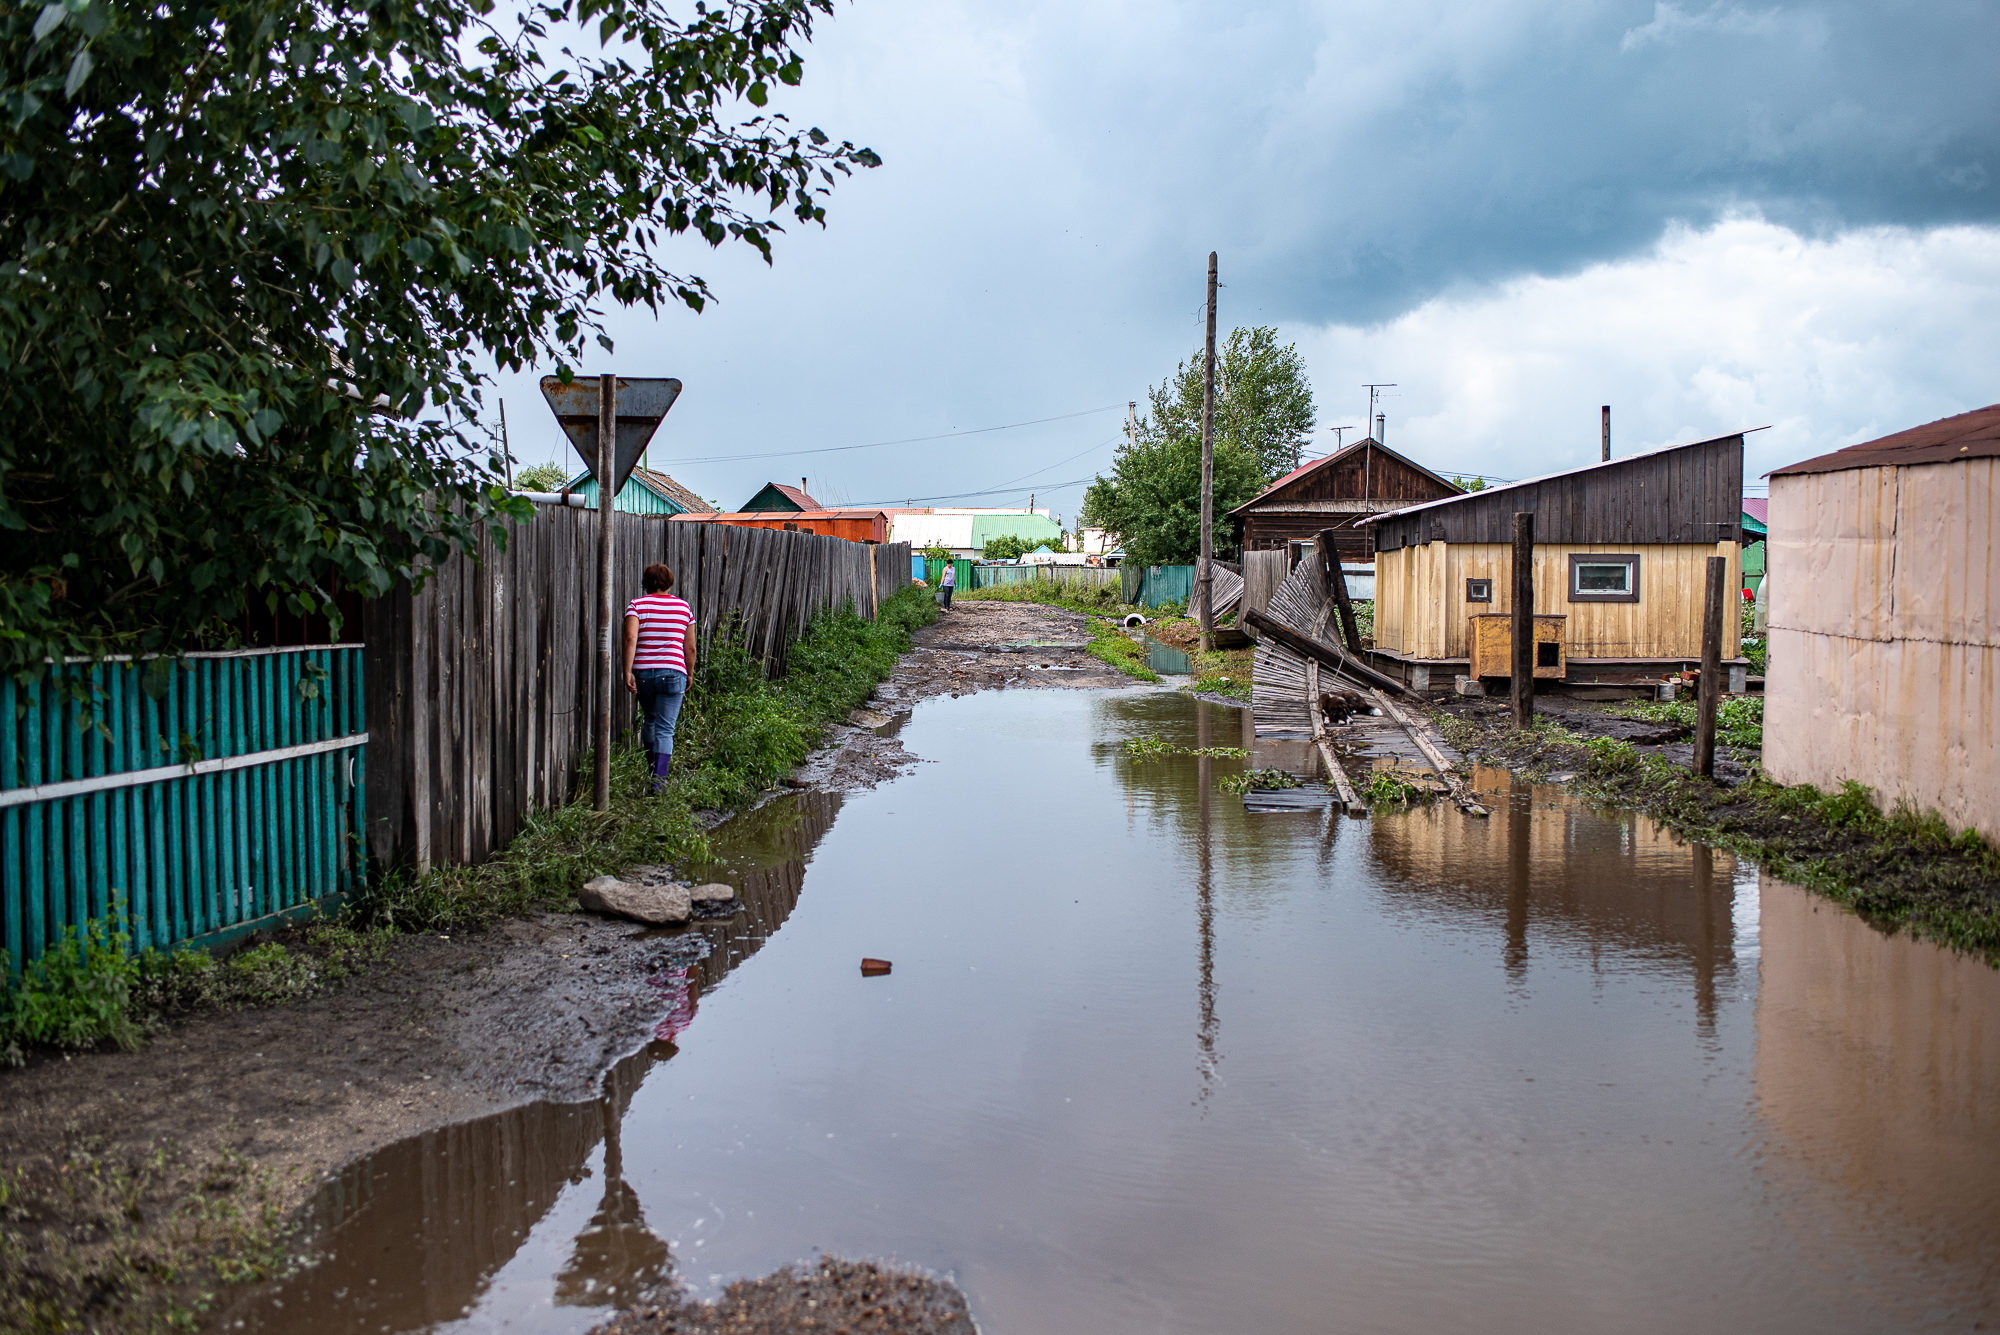 Наводнение, вызванное дождями, обрушилось на село в Забайкалье